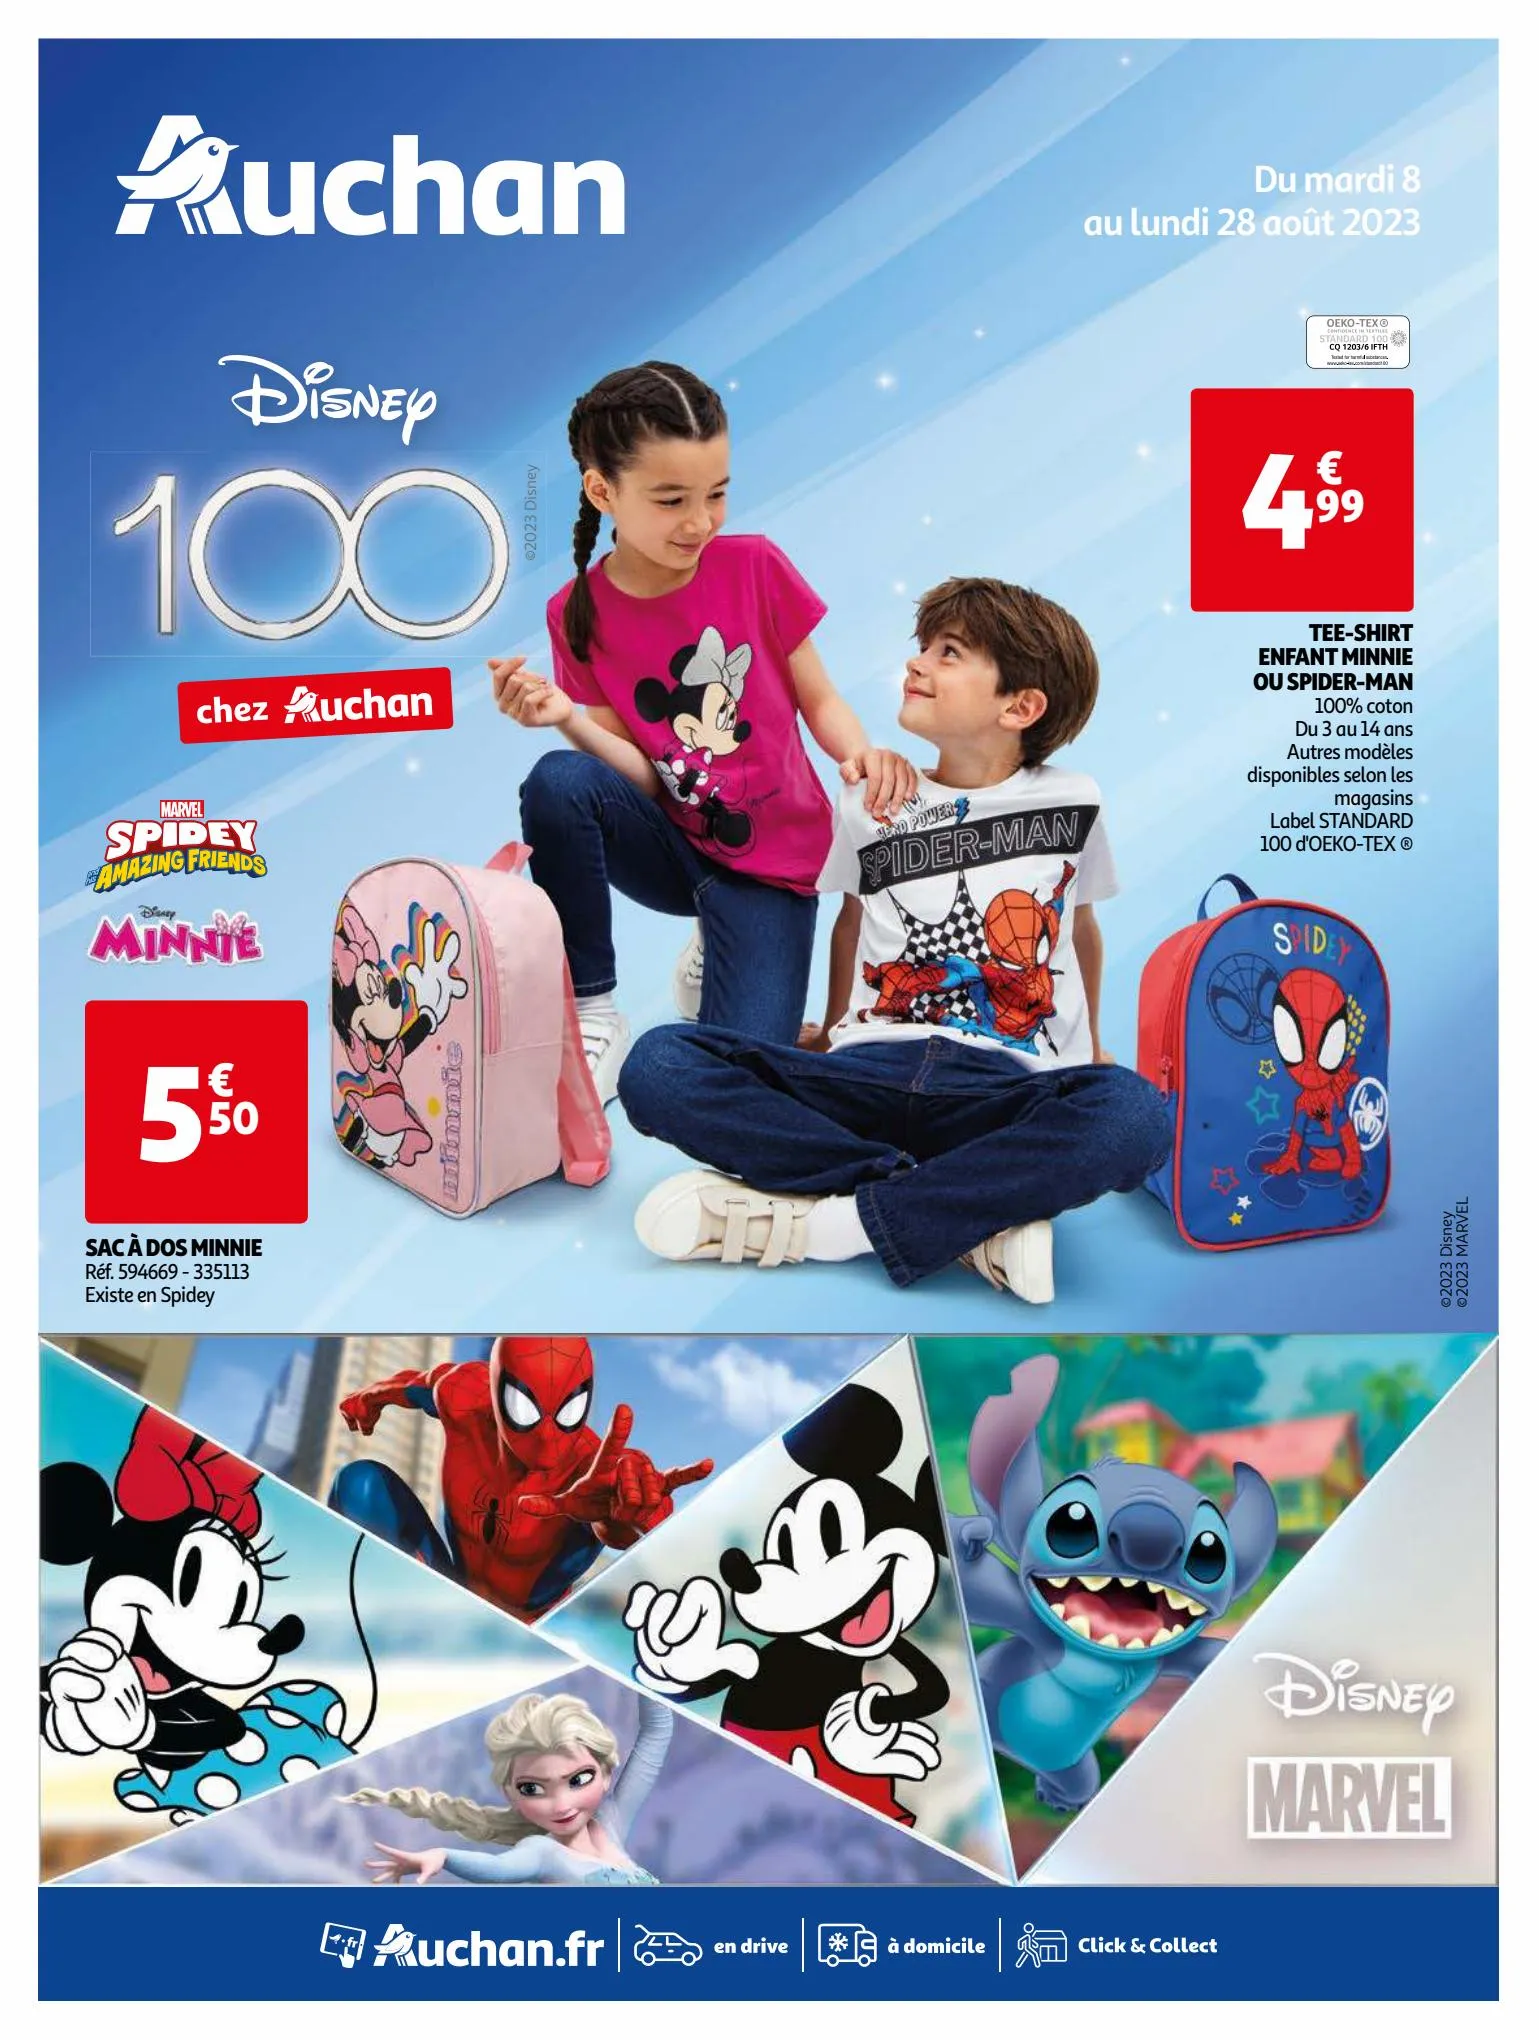 Catalogue Disney 100 chez Auchan., page 00001